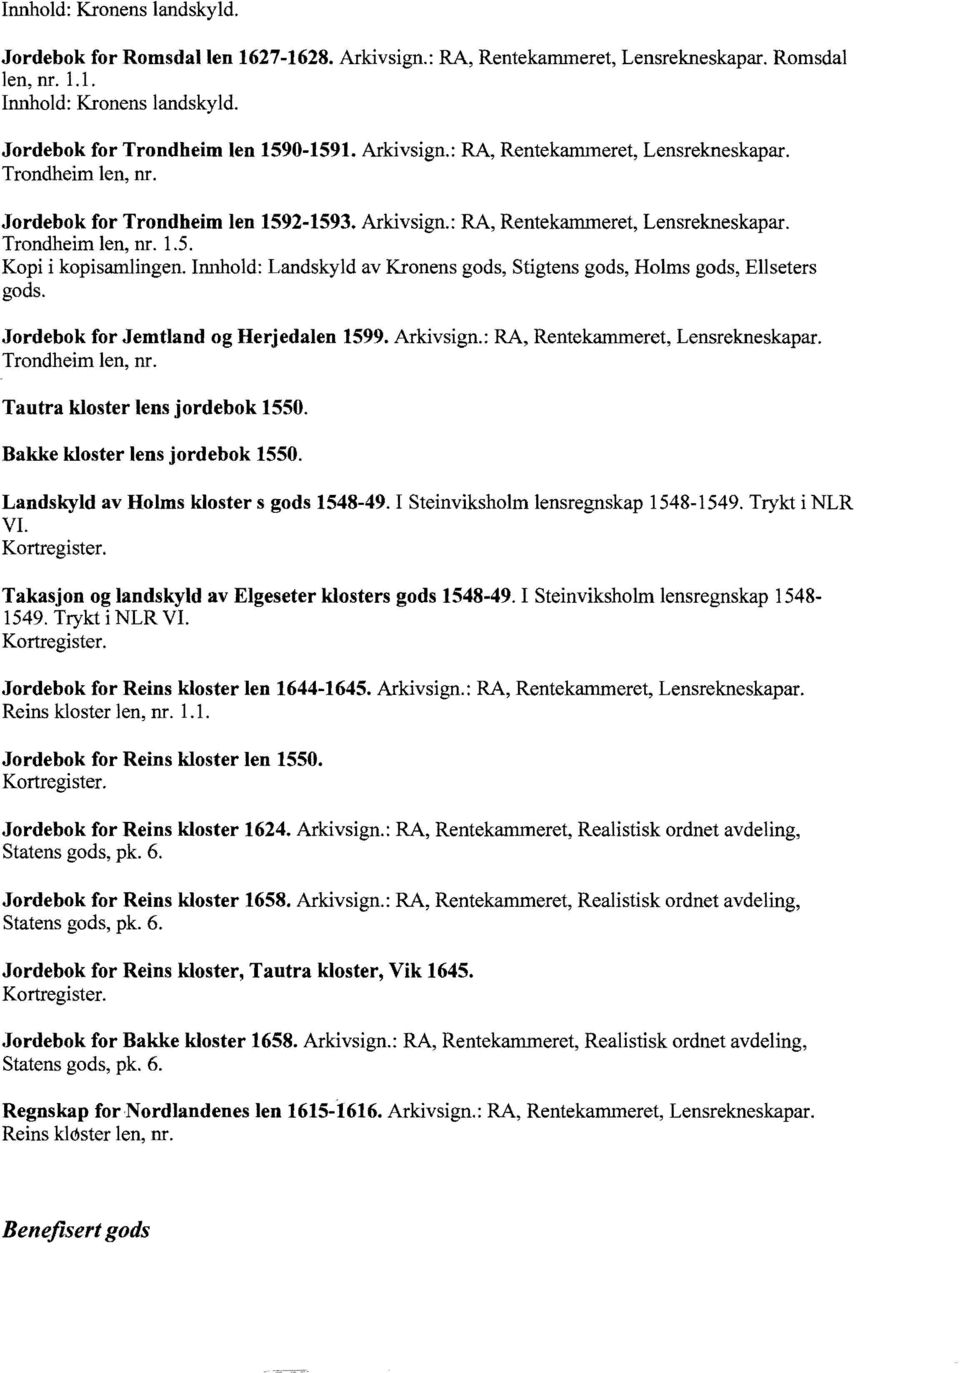 Innhold: Landskyld av Kronens gods, Stigtens gods, Holms gods, Ellseters gods. Jordebok for Jemtland og Herjedalen 1599. Arkivsign.: RA, Rentekammeret, Lensrekneskapar. Trondheim len, nr.